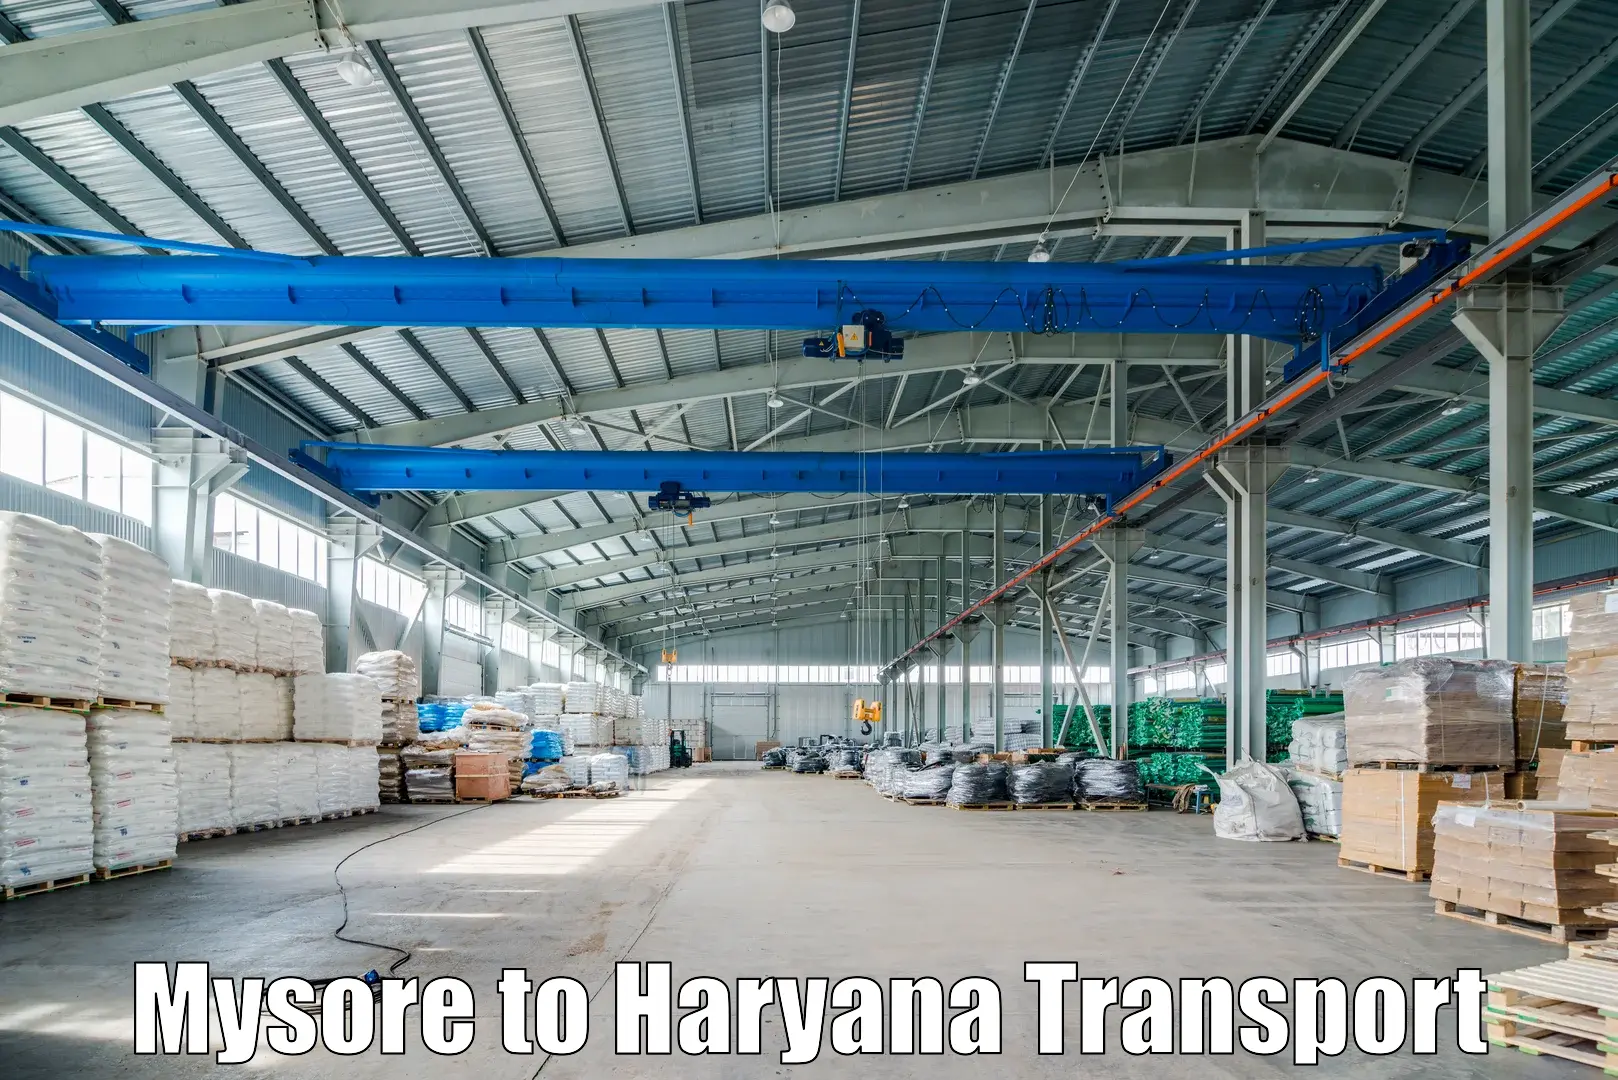 Shipping partner Mysore to Narwana